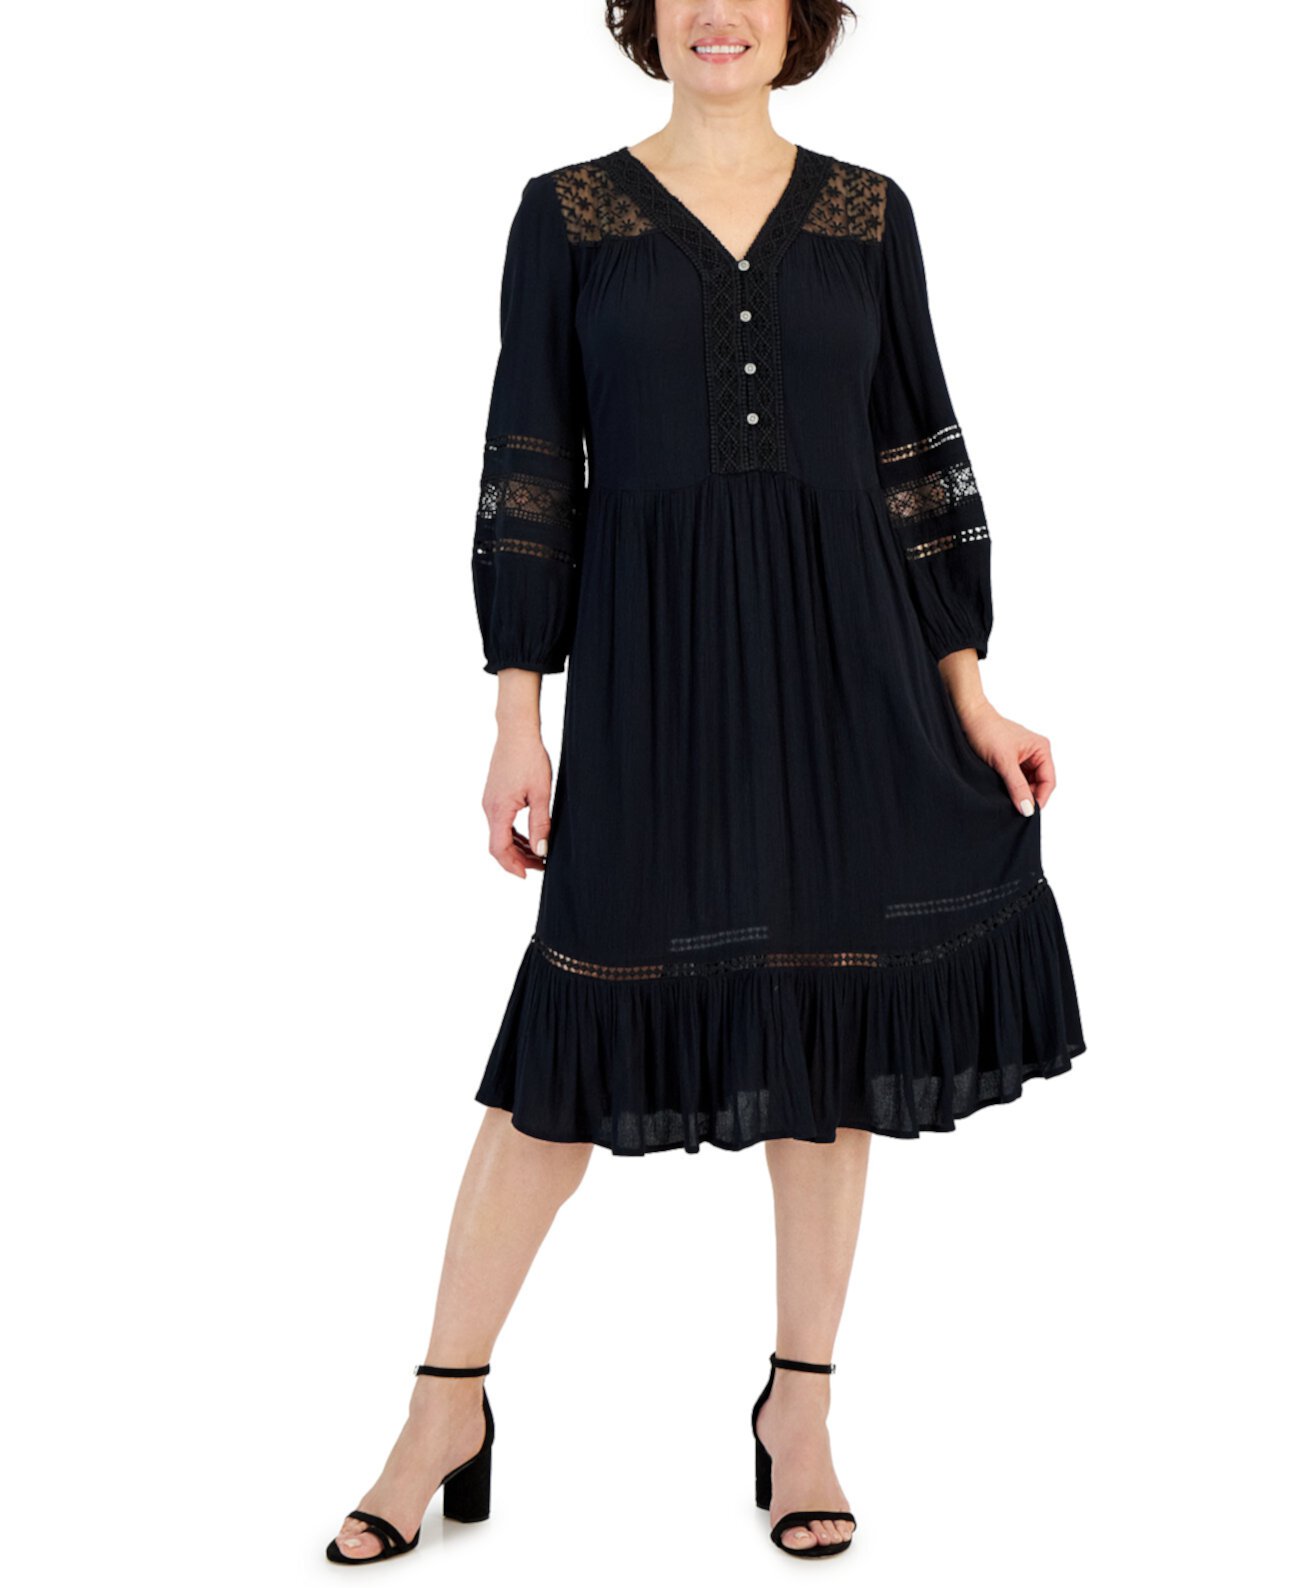 Миниатюрное платье с кружевной отделкой, созданное для Macy's Style & Co